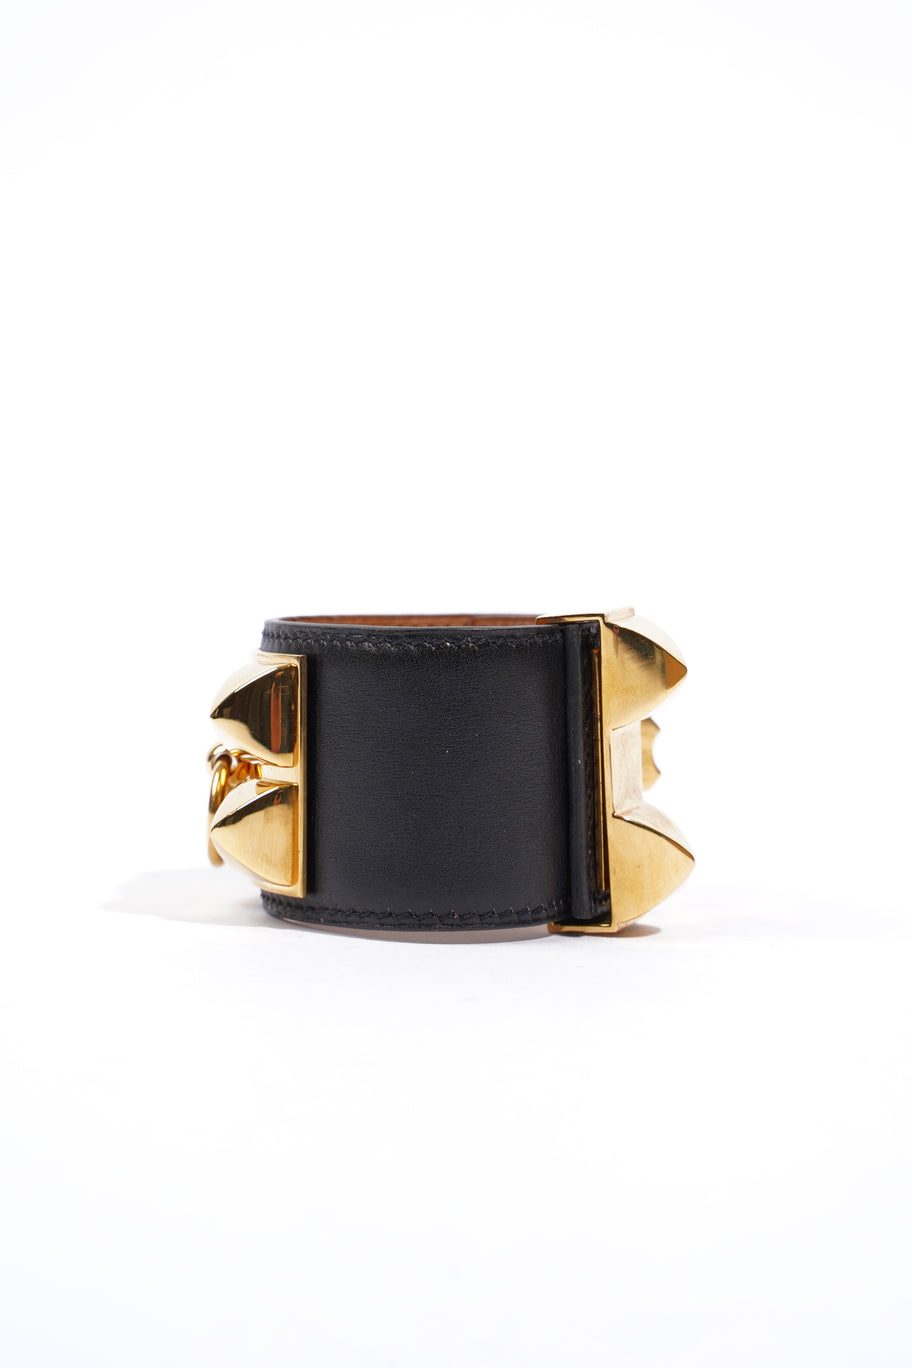 Collier De Chien Bracelet Black Goatskin Leather T2 (S) Image 3